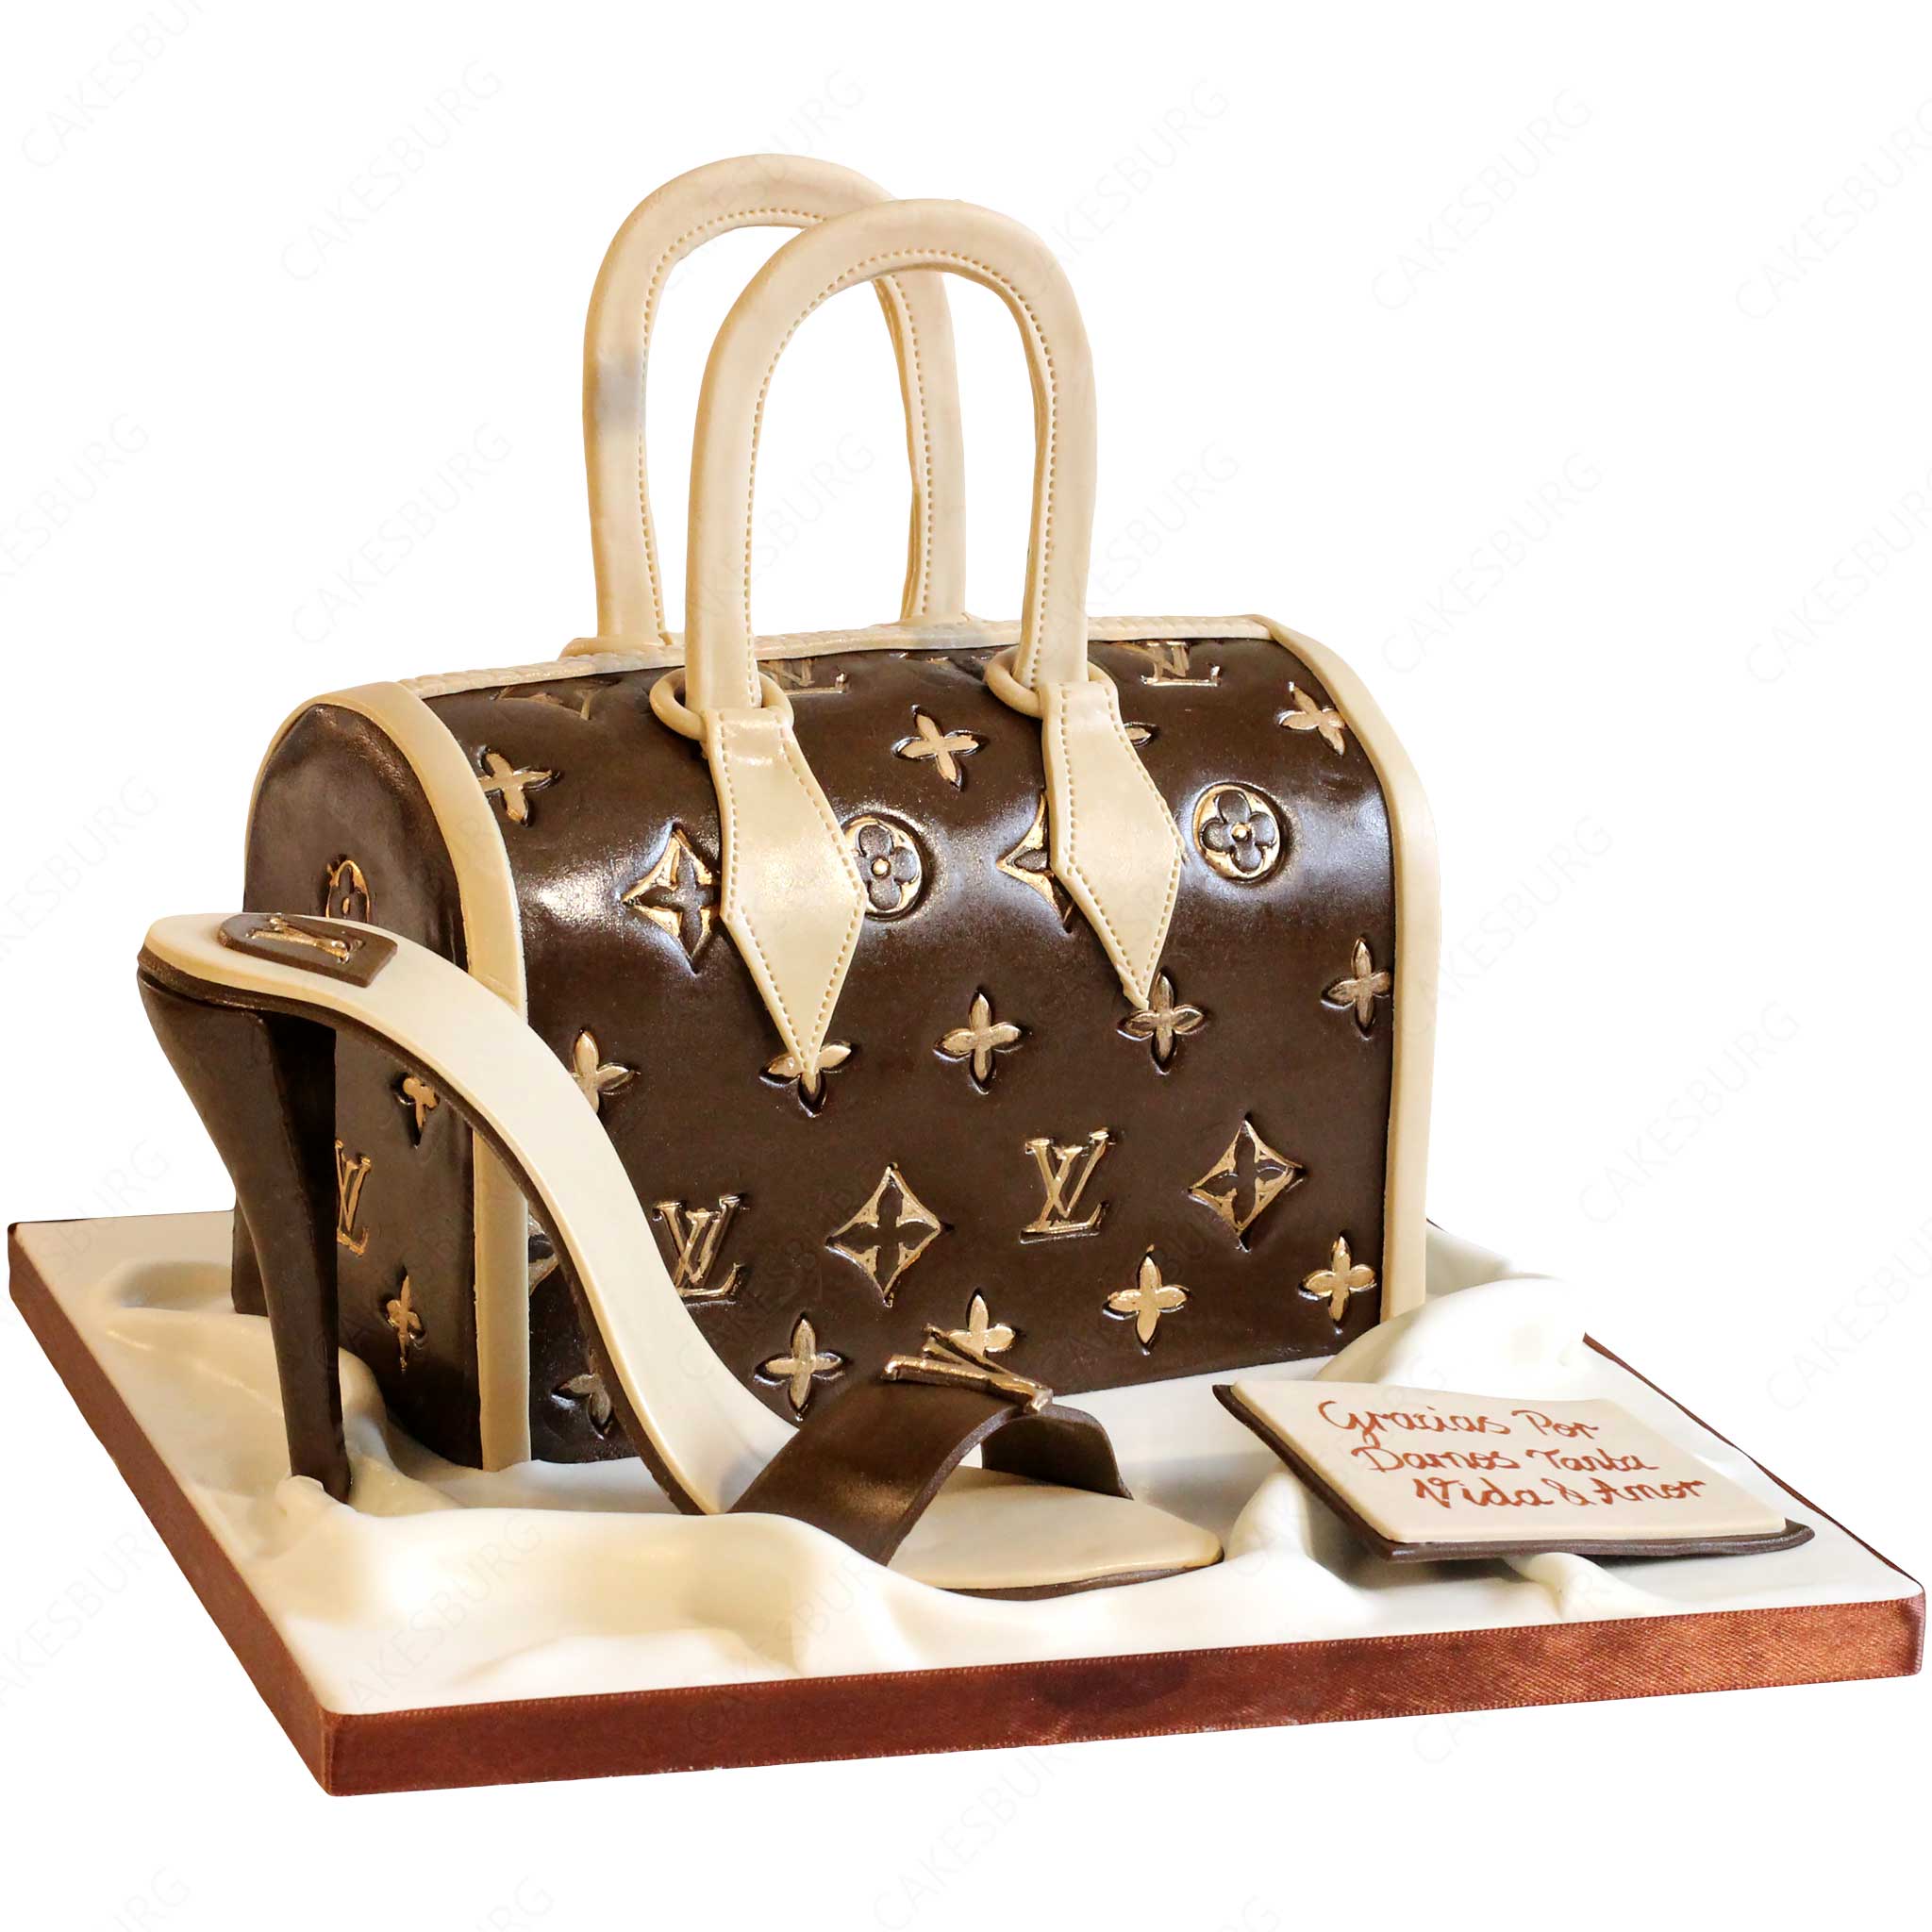 Designer Handbag CAKE! | The Cake Blog